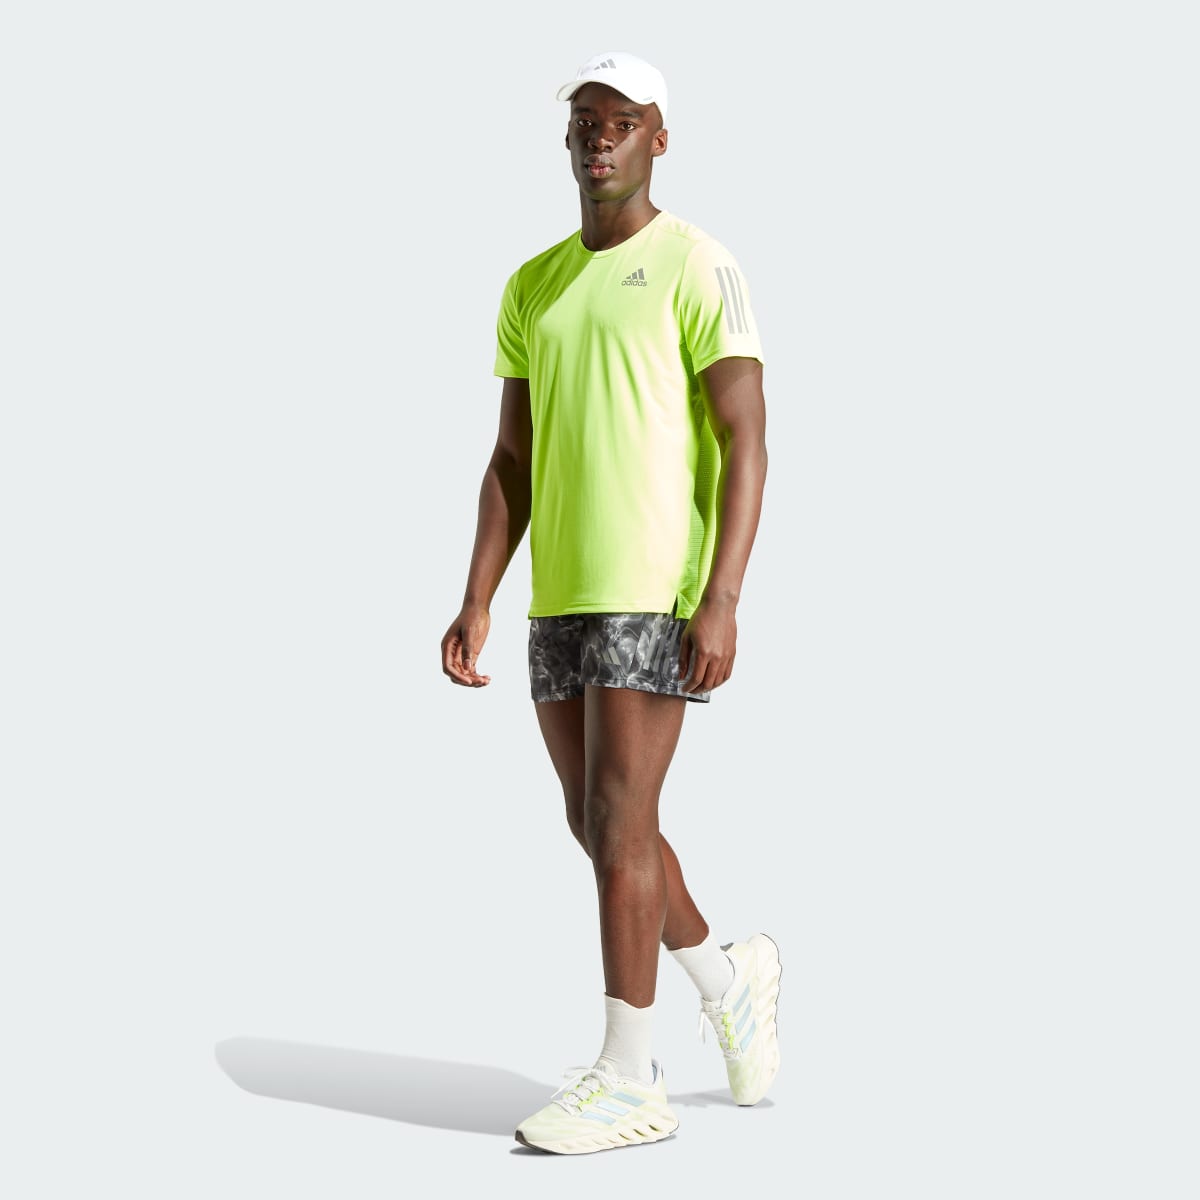 Adidas Own the Run T-Shirt. 6